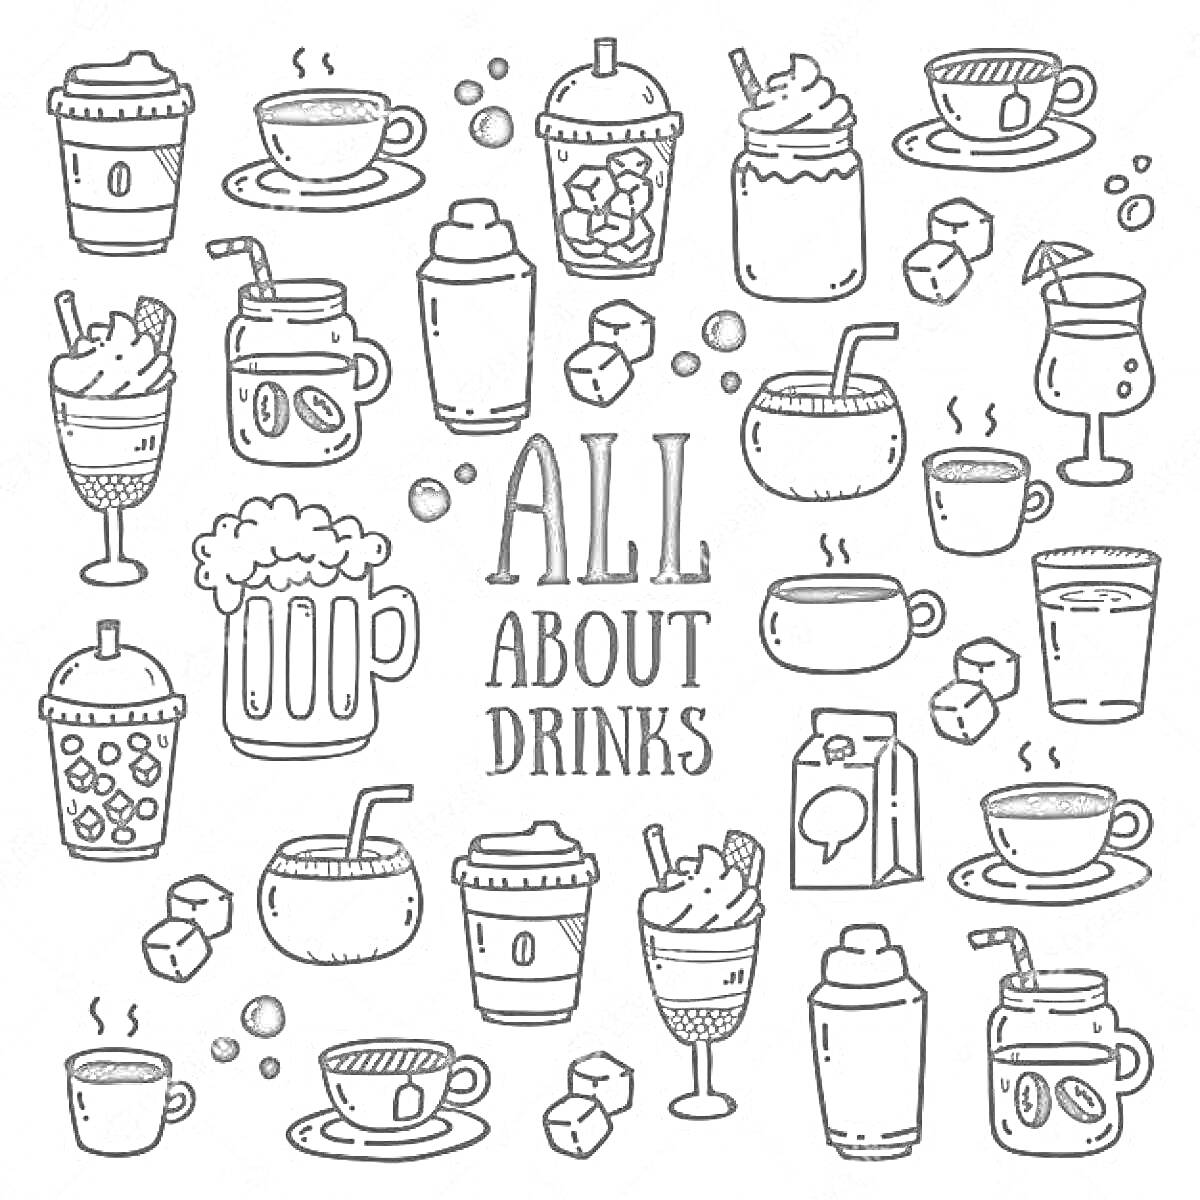 Раскраска Все о напитках - кофе, чай, коктейли, молочные коктейли, чай с молоком, пакетик сока, кубики льда, банка напитка, чайник, горячие напитки, холодные напитки